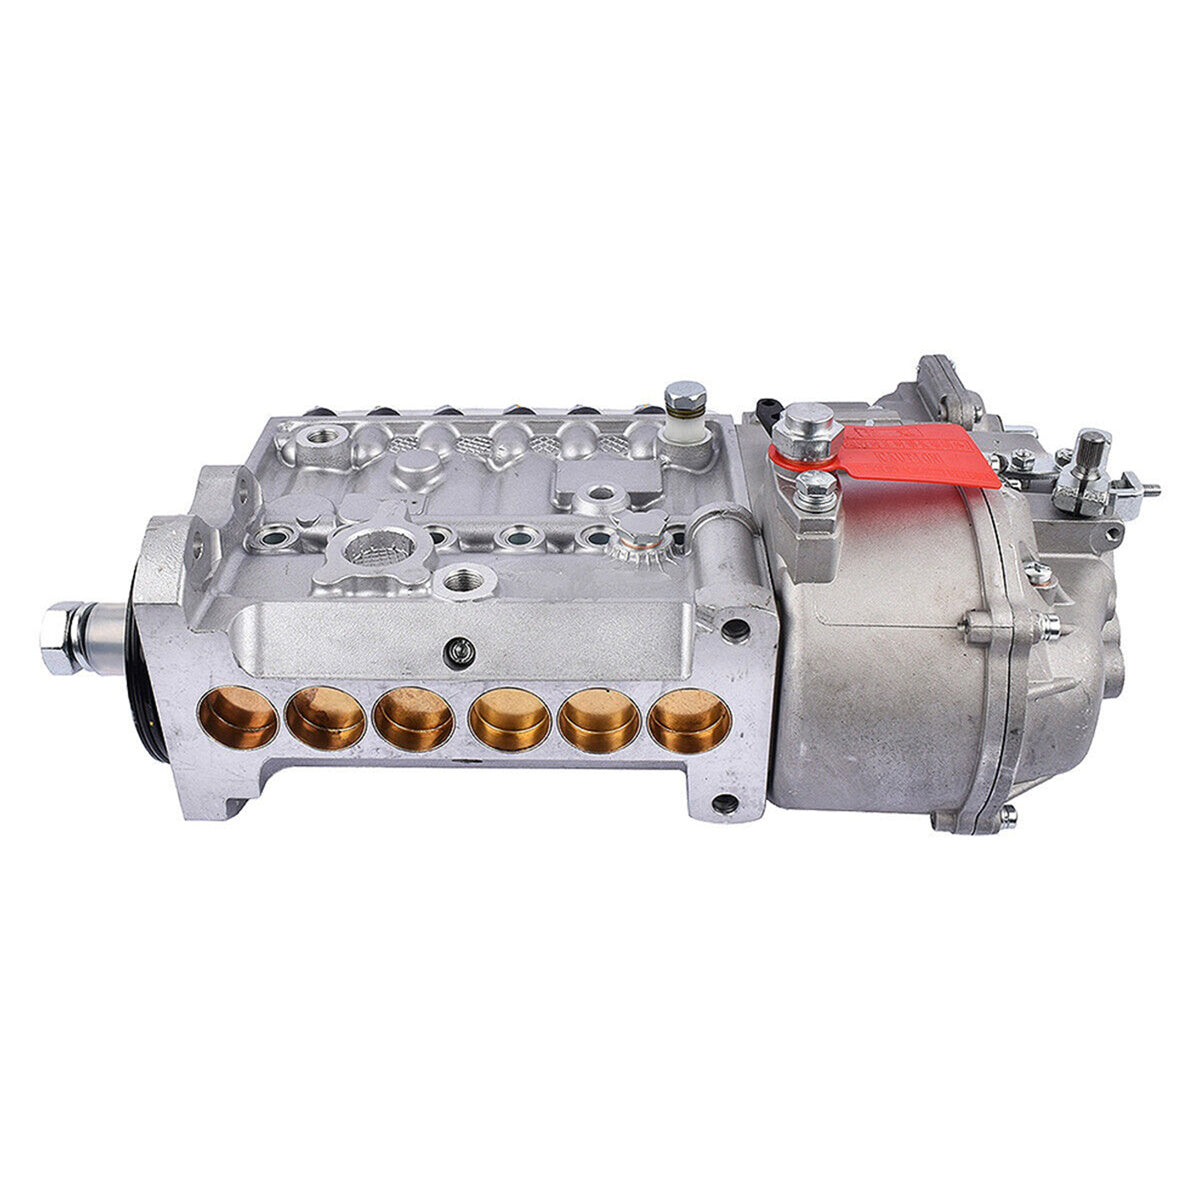 3931537 Fuel Injection Pump for 94-98 Dodge Ram 2500 3500 Cummins 5.9L 12V Engine P7100 - Sinocmp